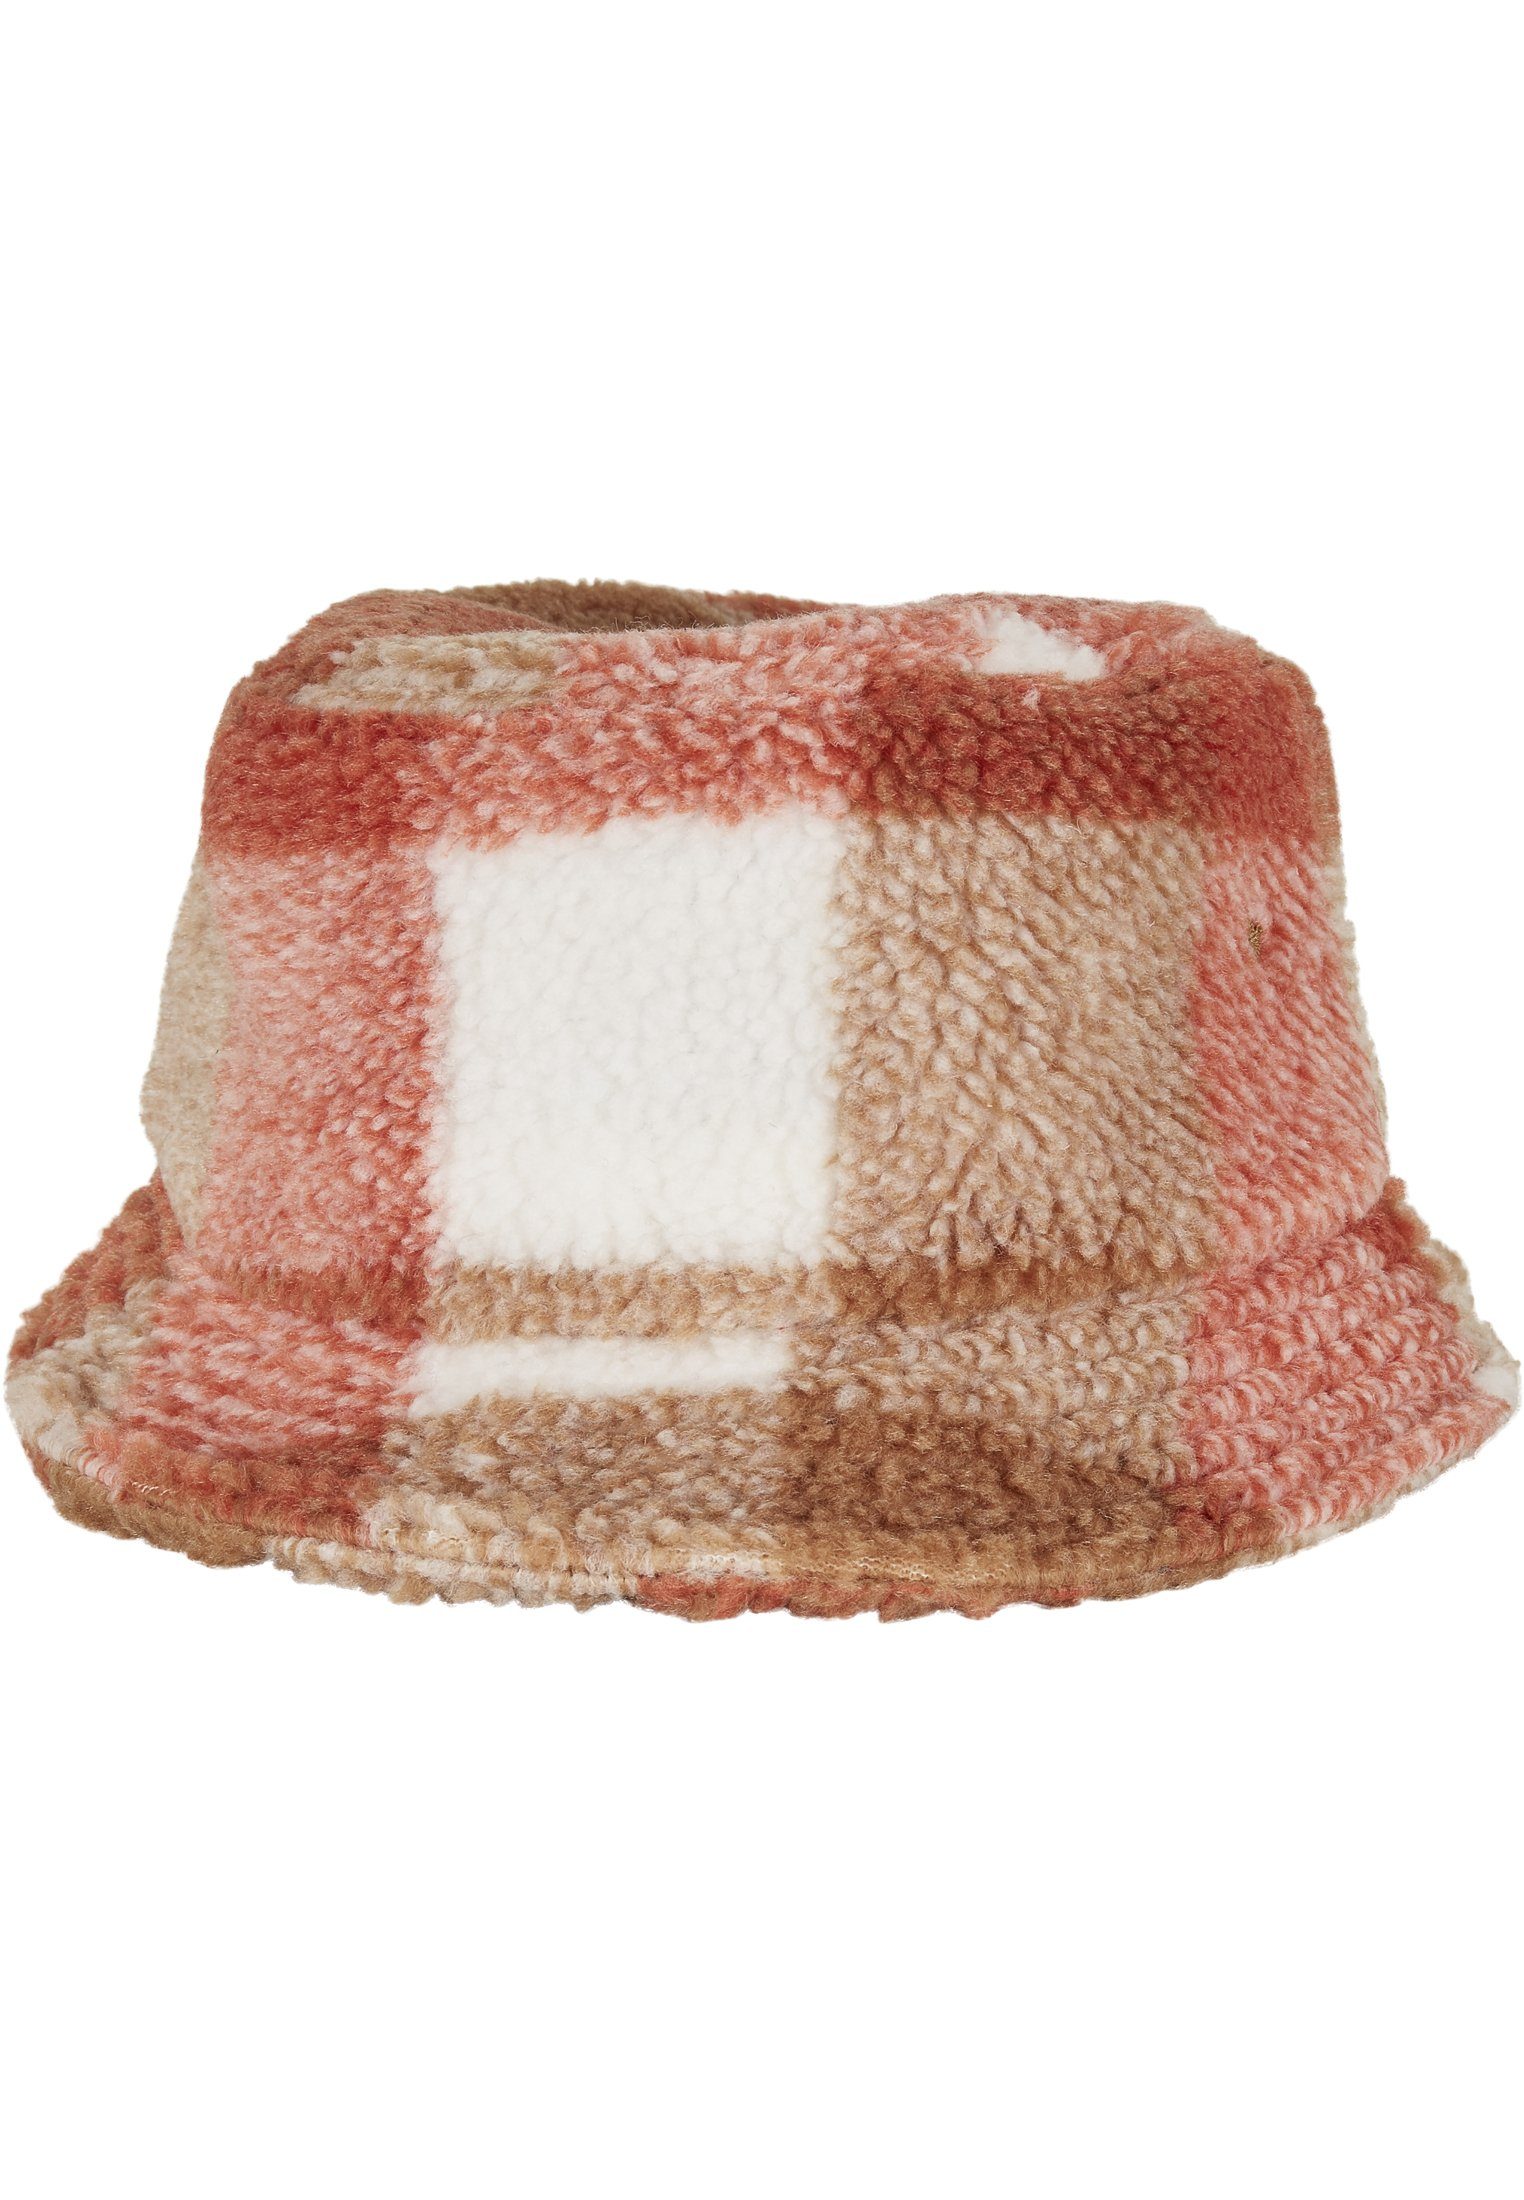 Cap Bucket Flex Hat Hat Check Sherpa Bucket whitesand/toffee Flexfit